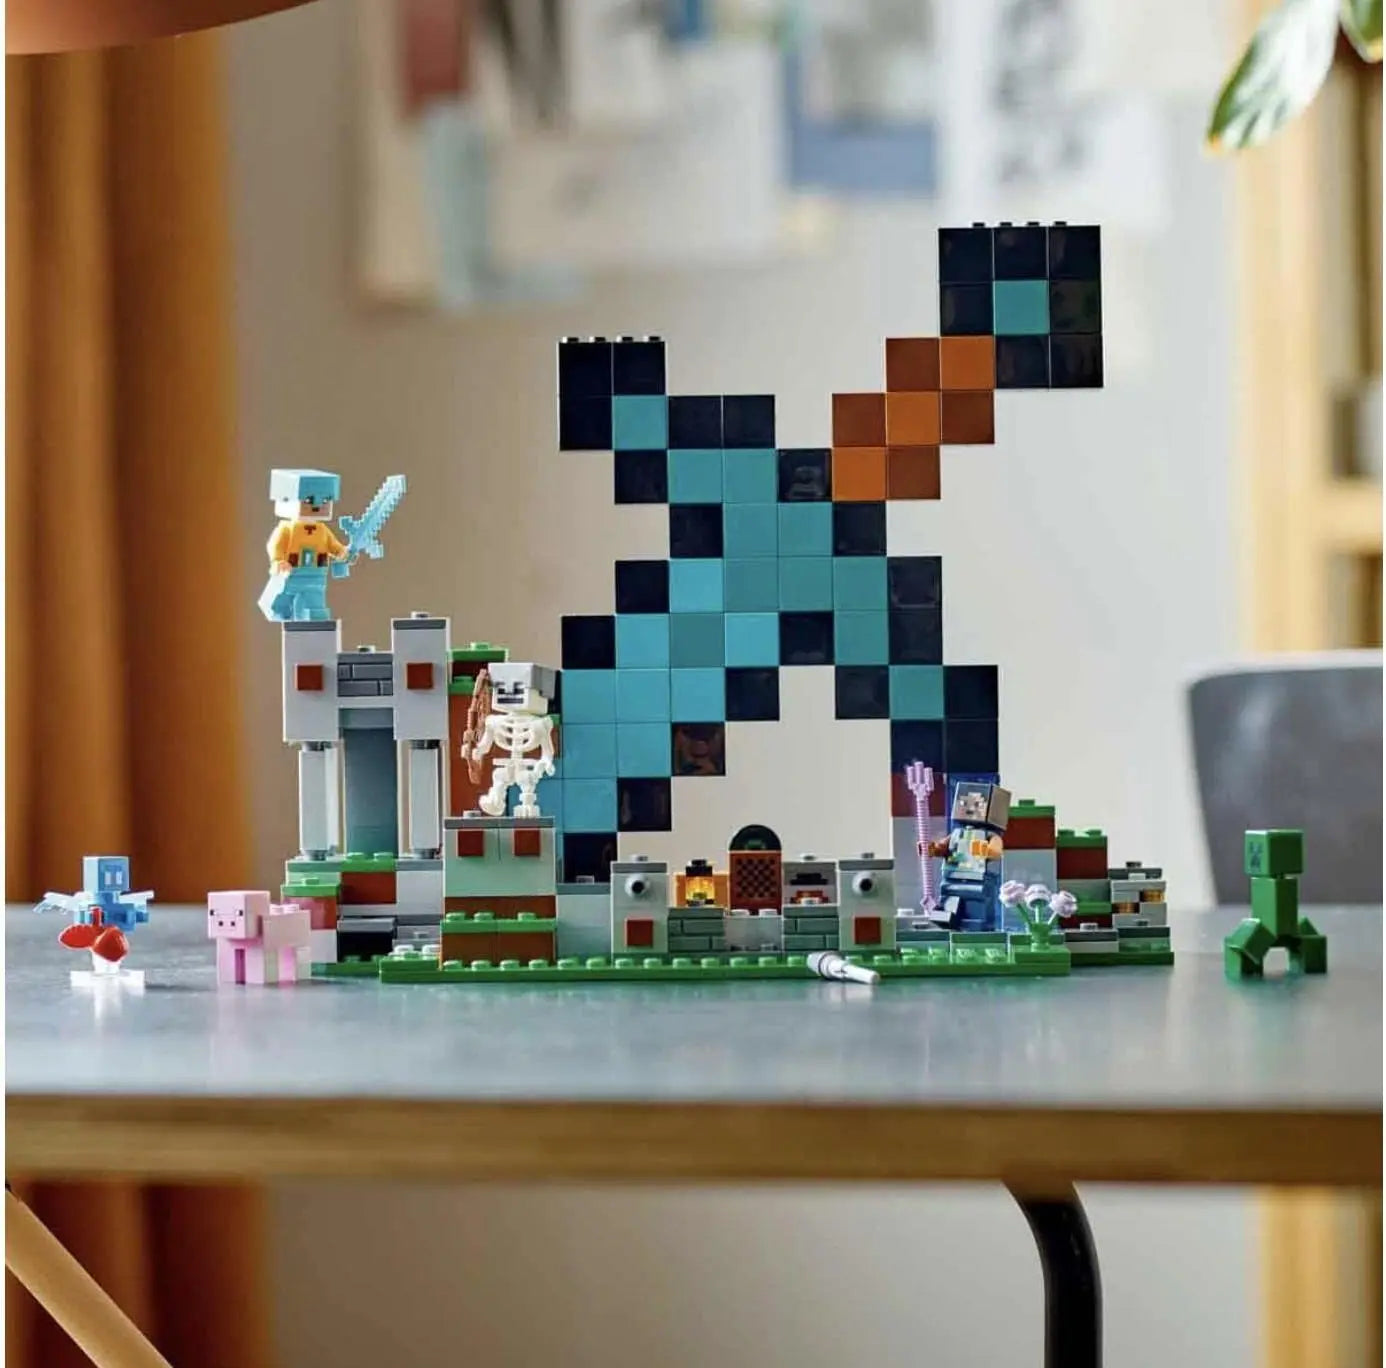 21244 - LEGO® Minecraft - L'Avant-poste de l'Épée LEGO : King Jouet, Lego,  briques et blocs LEGO - Jeux de construction